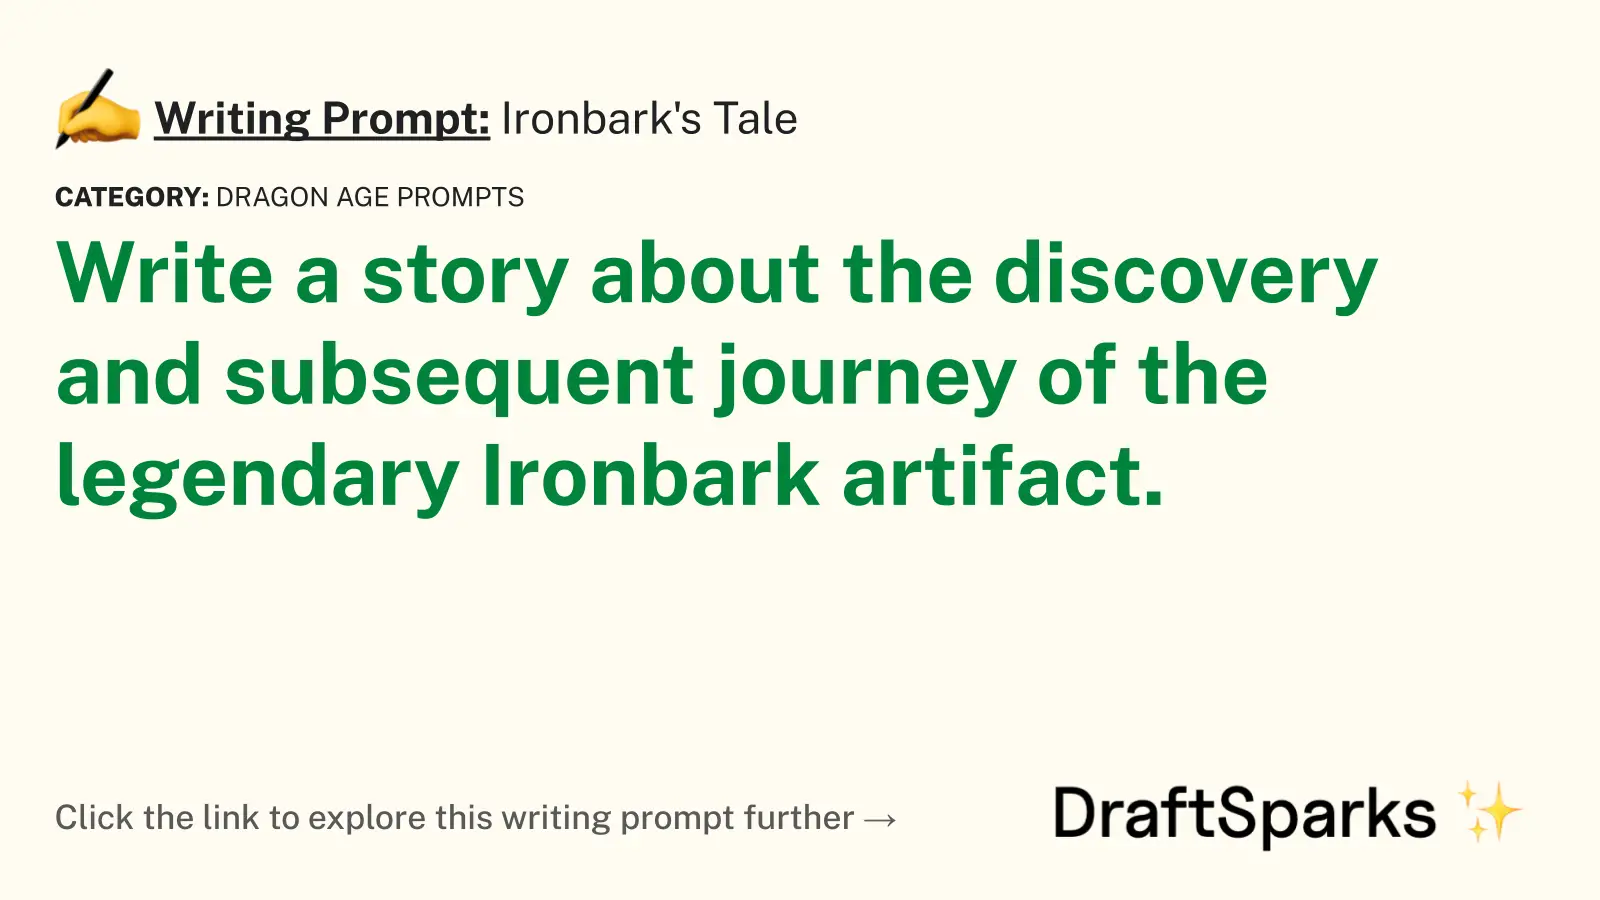 Ironbark’s Tale